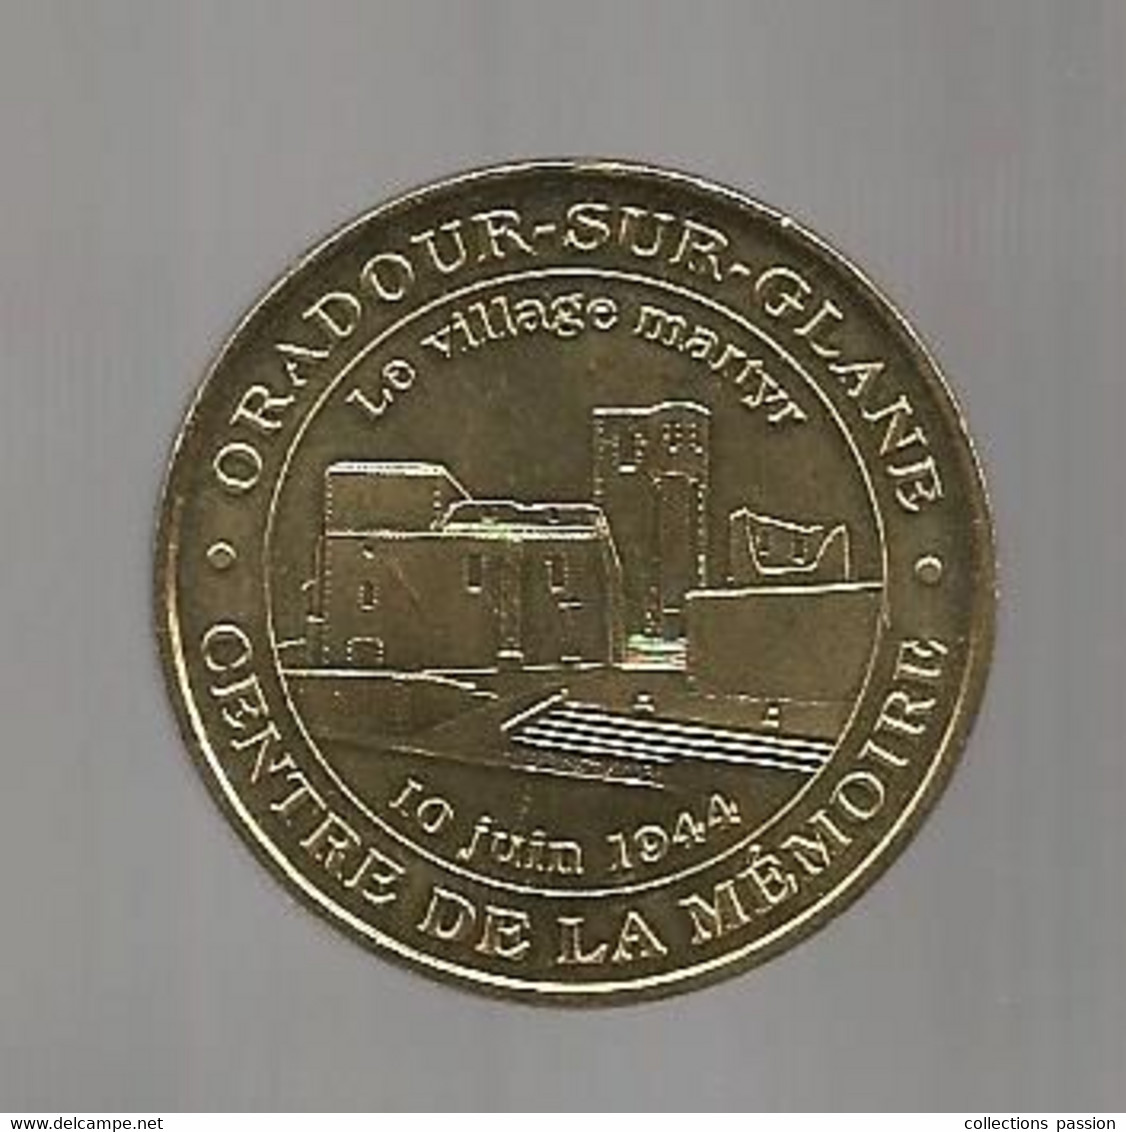 Médaille Touristique , 2008, Monnaie De Paris, ORADOUR SUR GLANE, Le Village Martyr, 10 Juin 1944 - 2008